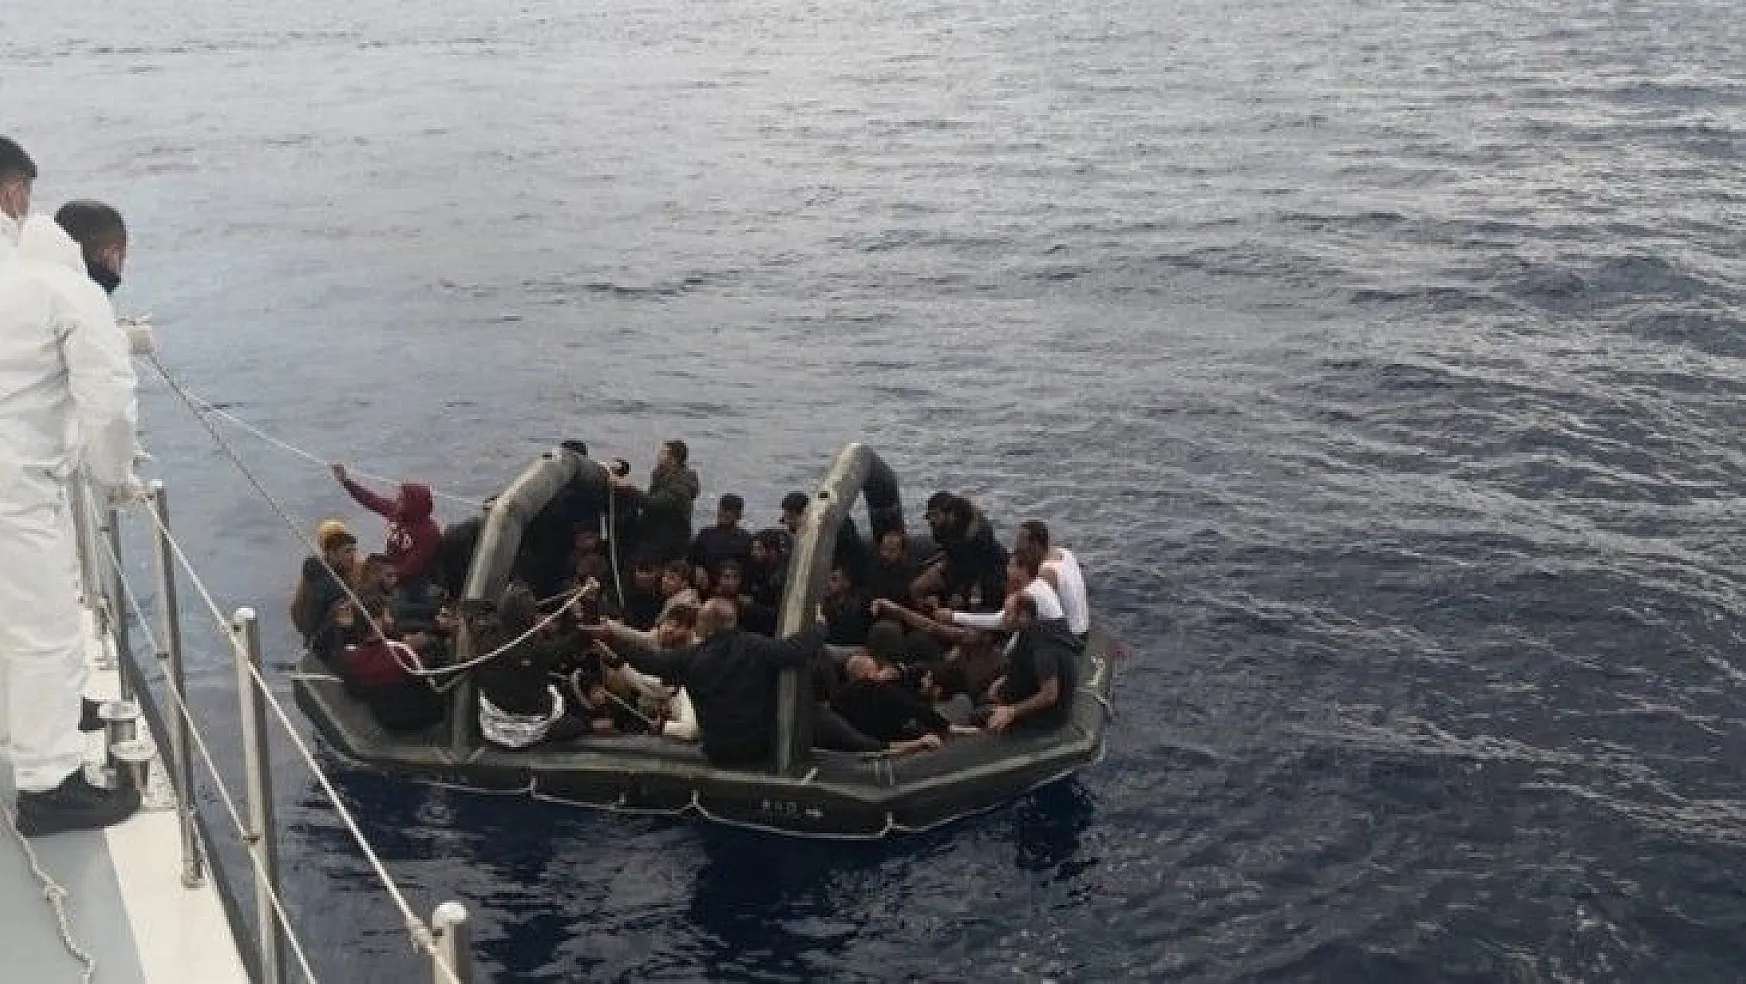 Yunan askerleri sınırları aştı, mültecileri Türk karasularına bırakıp kaçtı